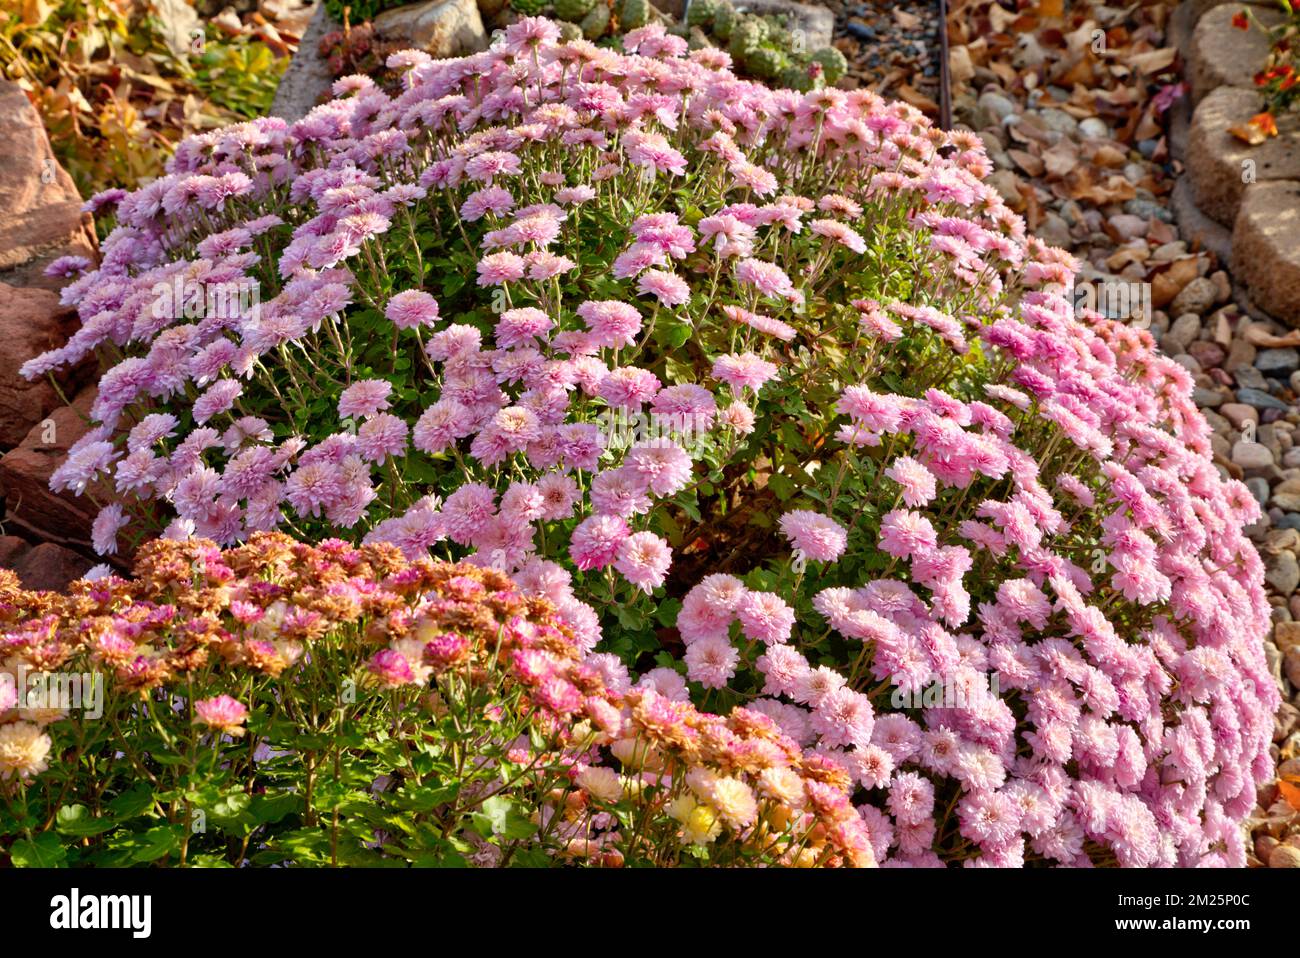 Une plante entière de chrysanthème recouverte de fleurs roses se distingue au soleil de la fin de l'après-midi. Banque D'Images